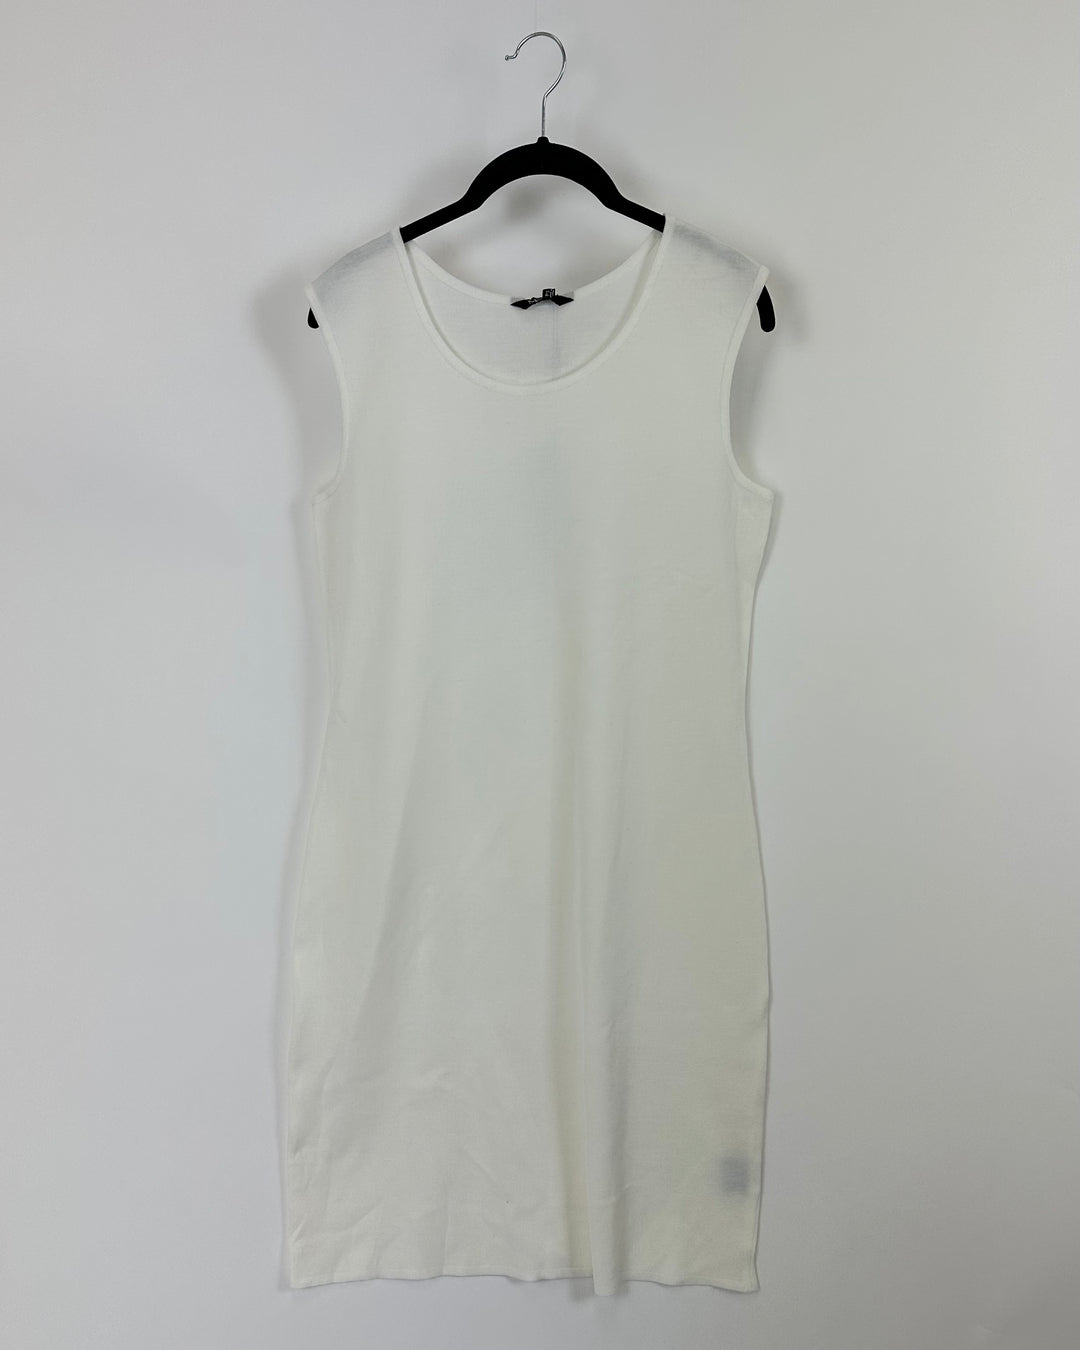 White Knit Tank Top Dress - Size 4-6